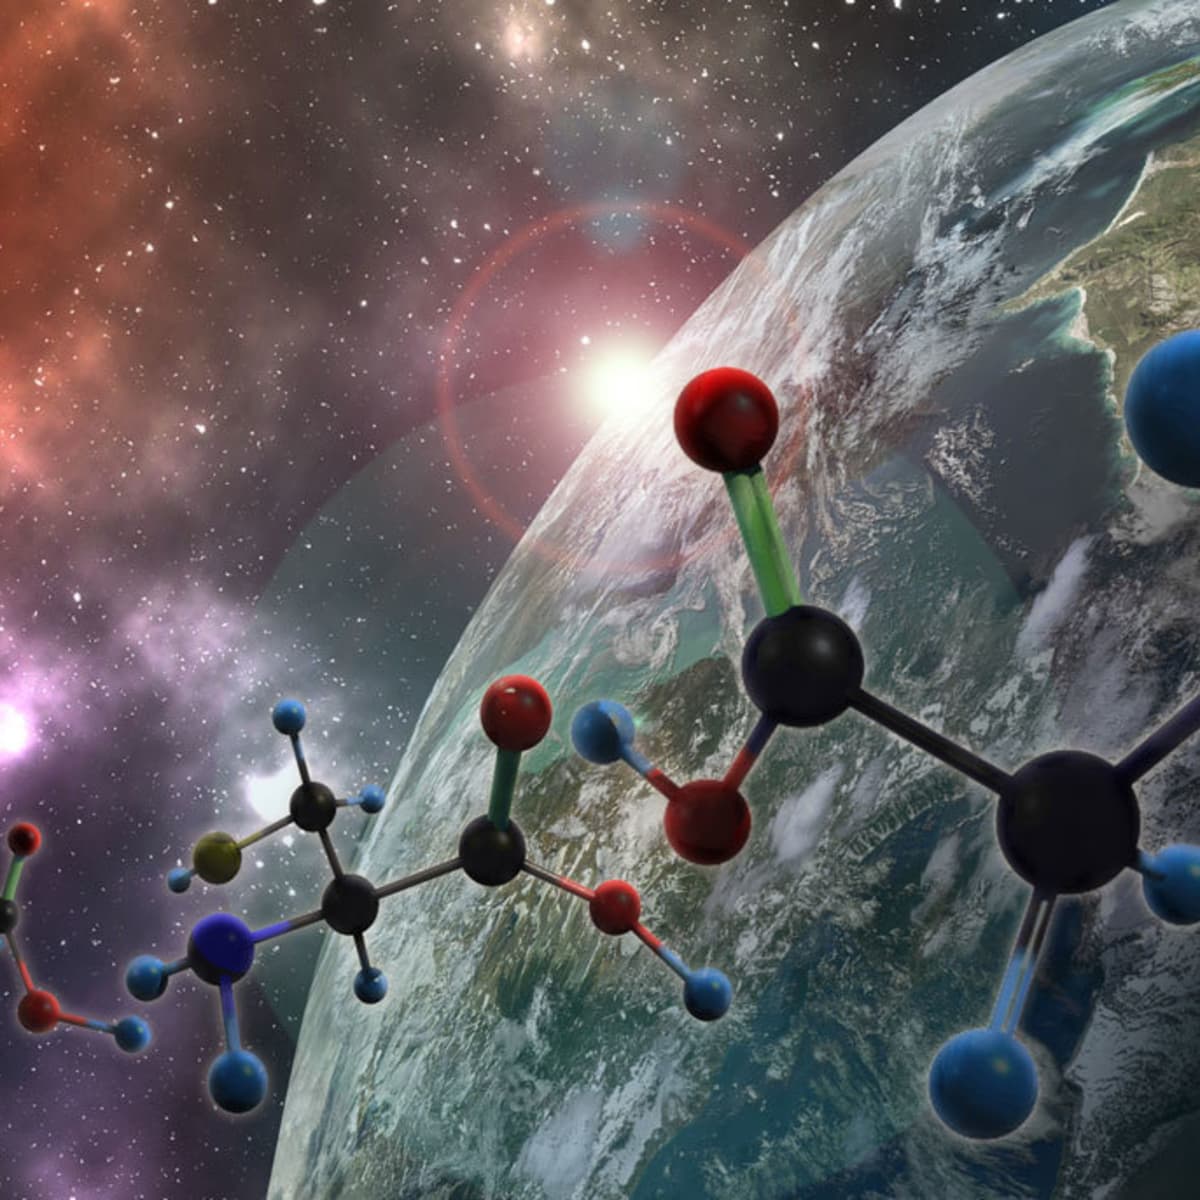 Top Universities for Astrochemistry Studies